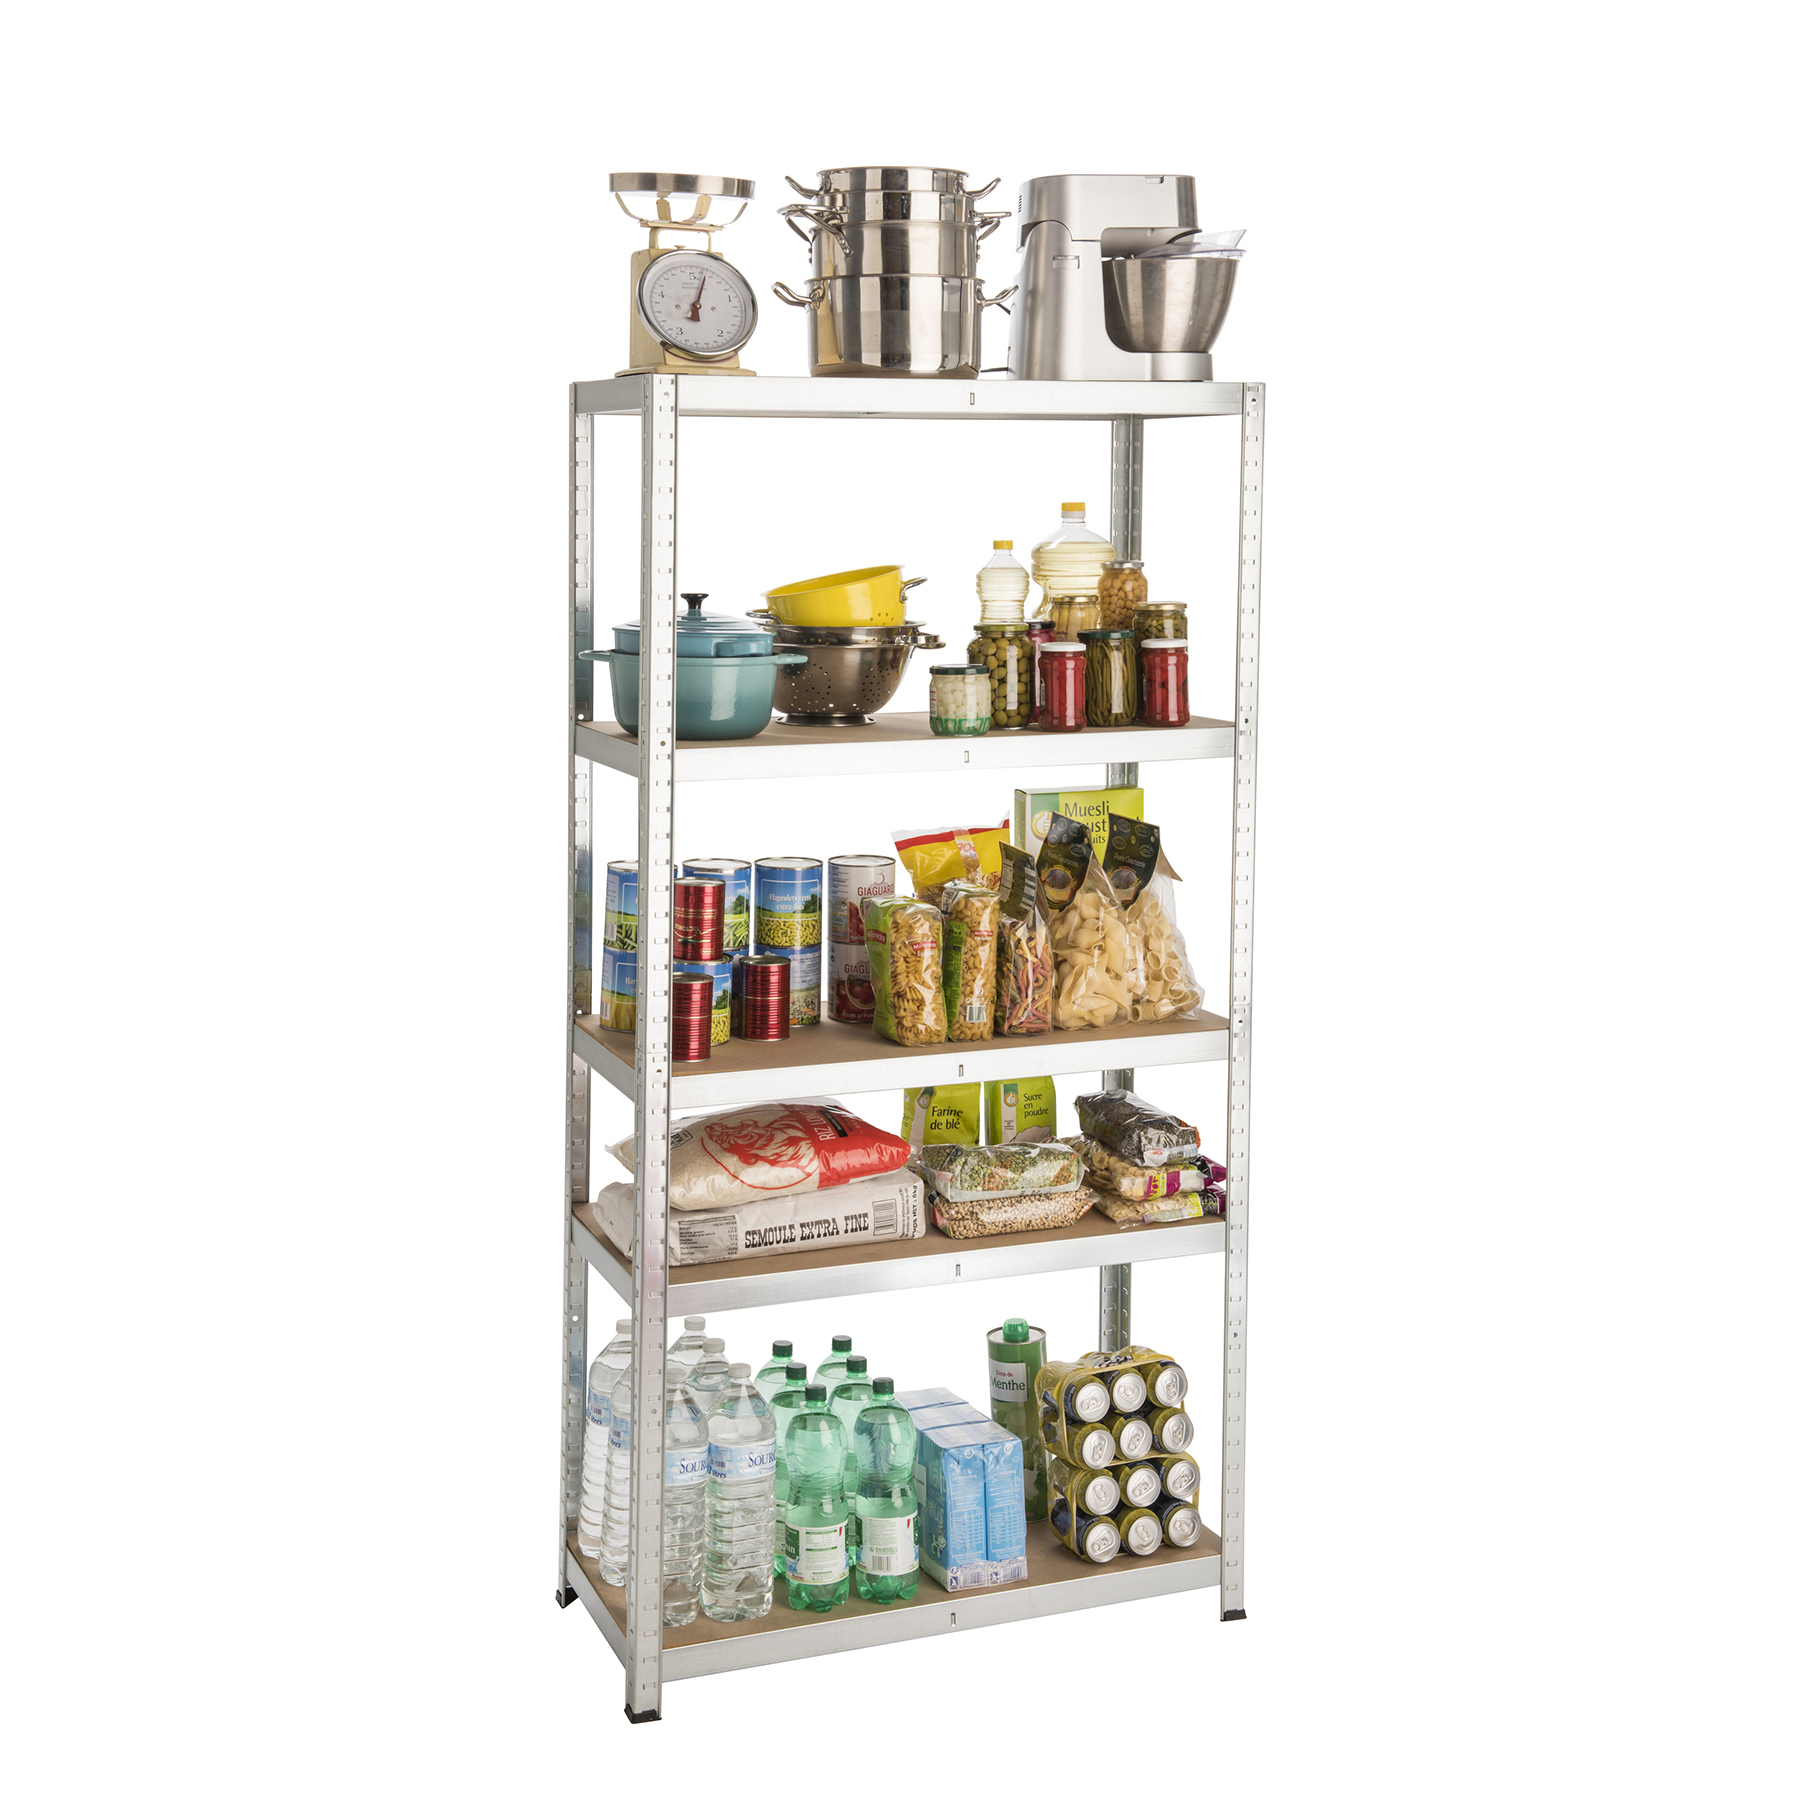 Modelos de estantes: Estante Multiuso Metal Prata Galvanizada Spaceo com alimentos e materiais de cozinha